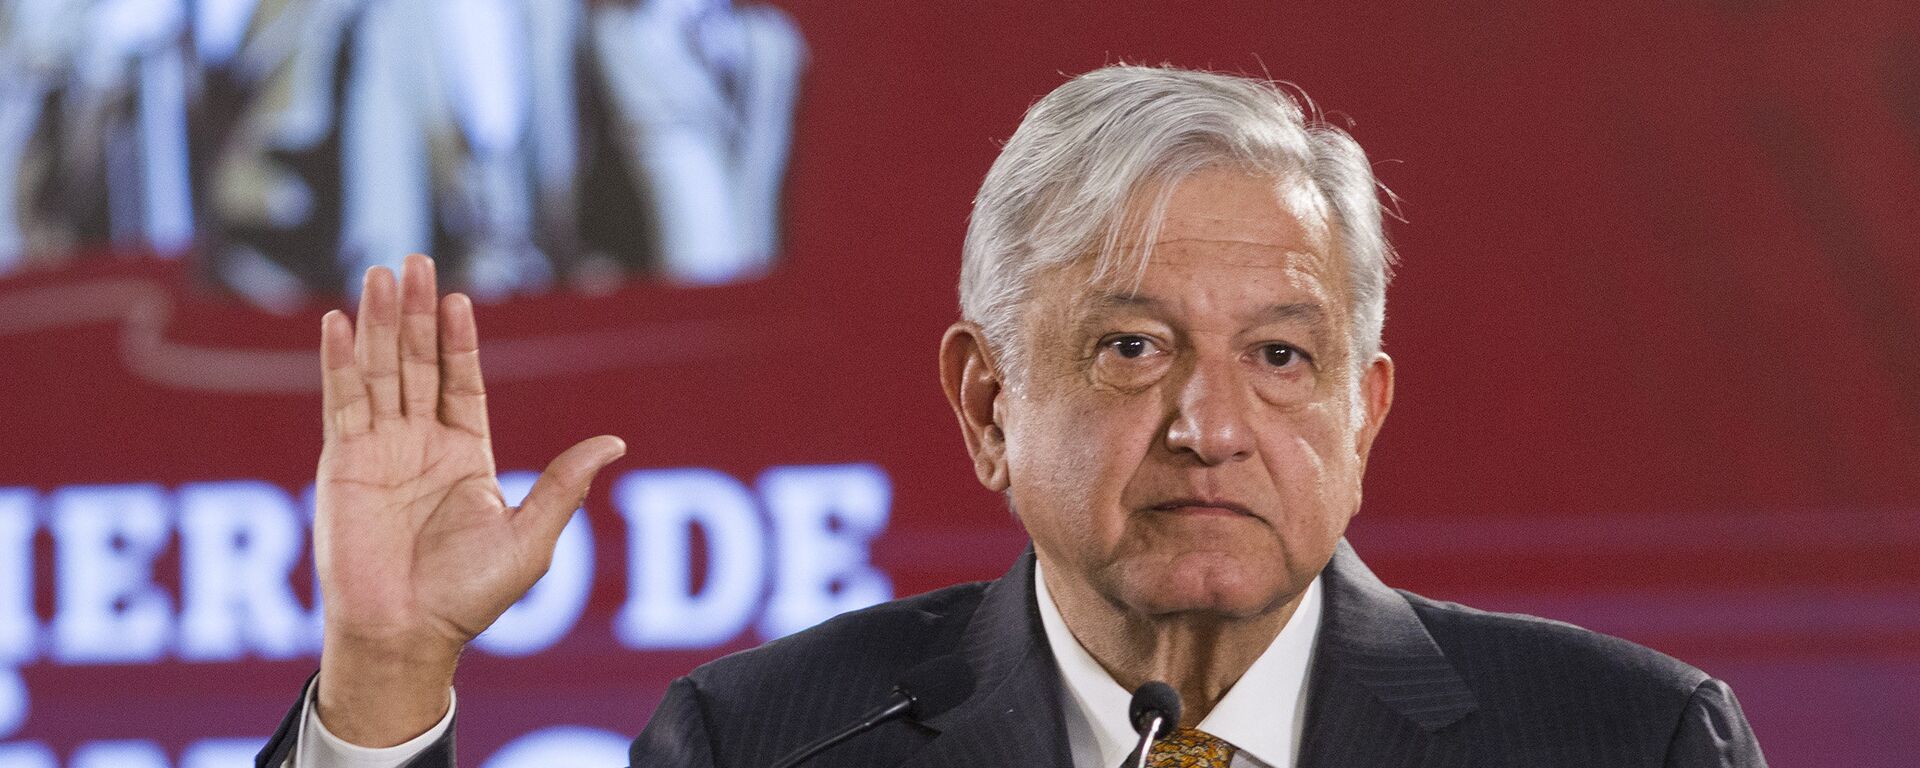 Andrés Manuel López Obrador, presidente de México  - Sputnik Mundo, 1920, 20.08.2021